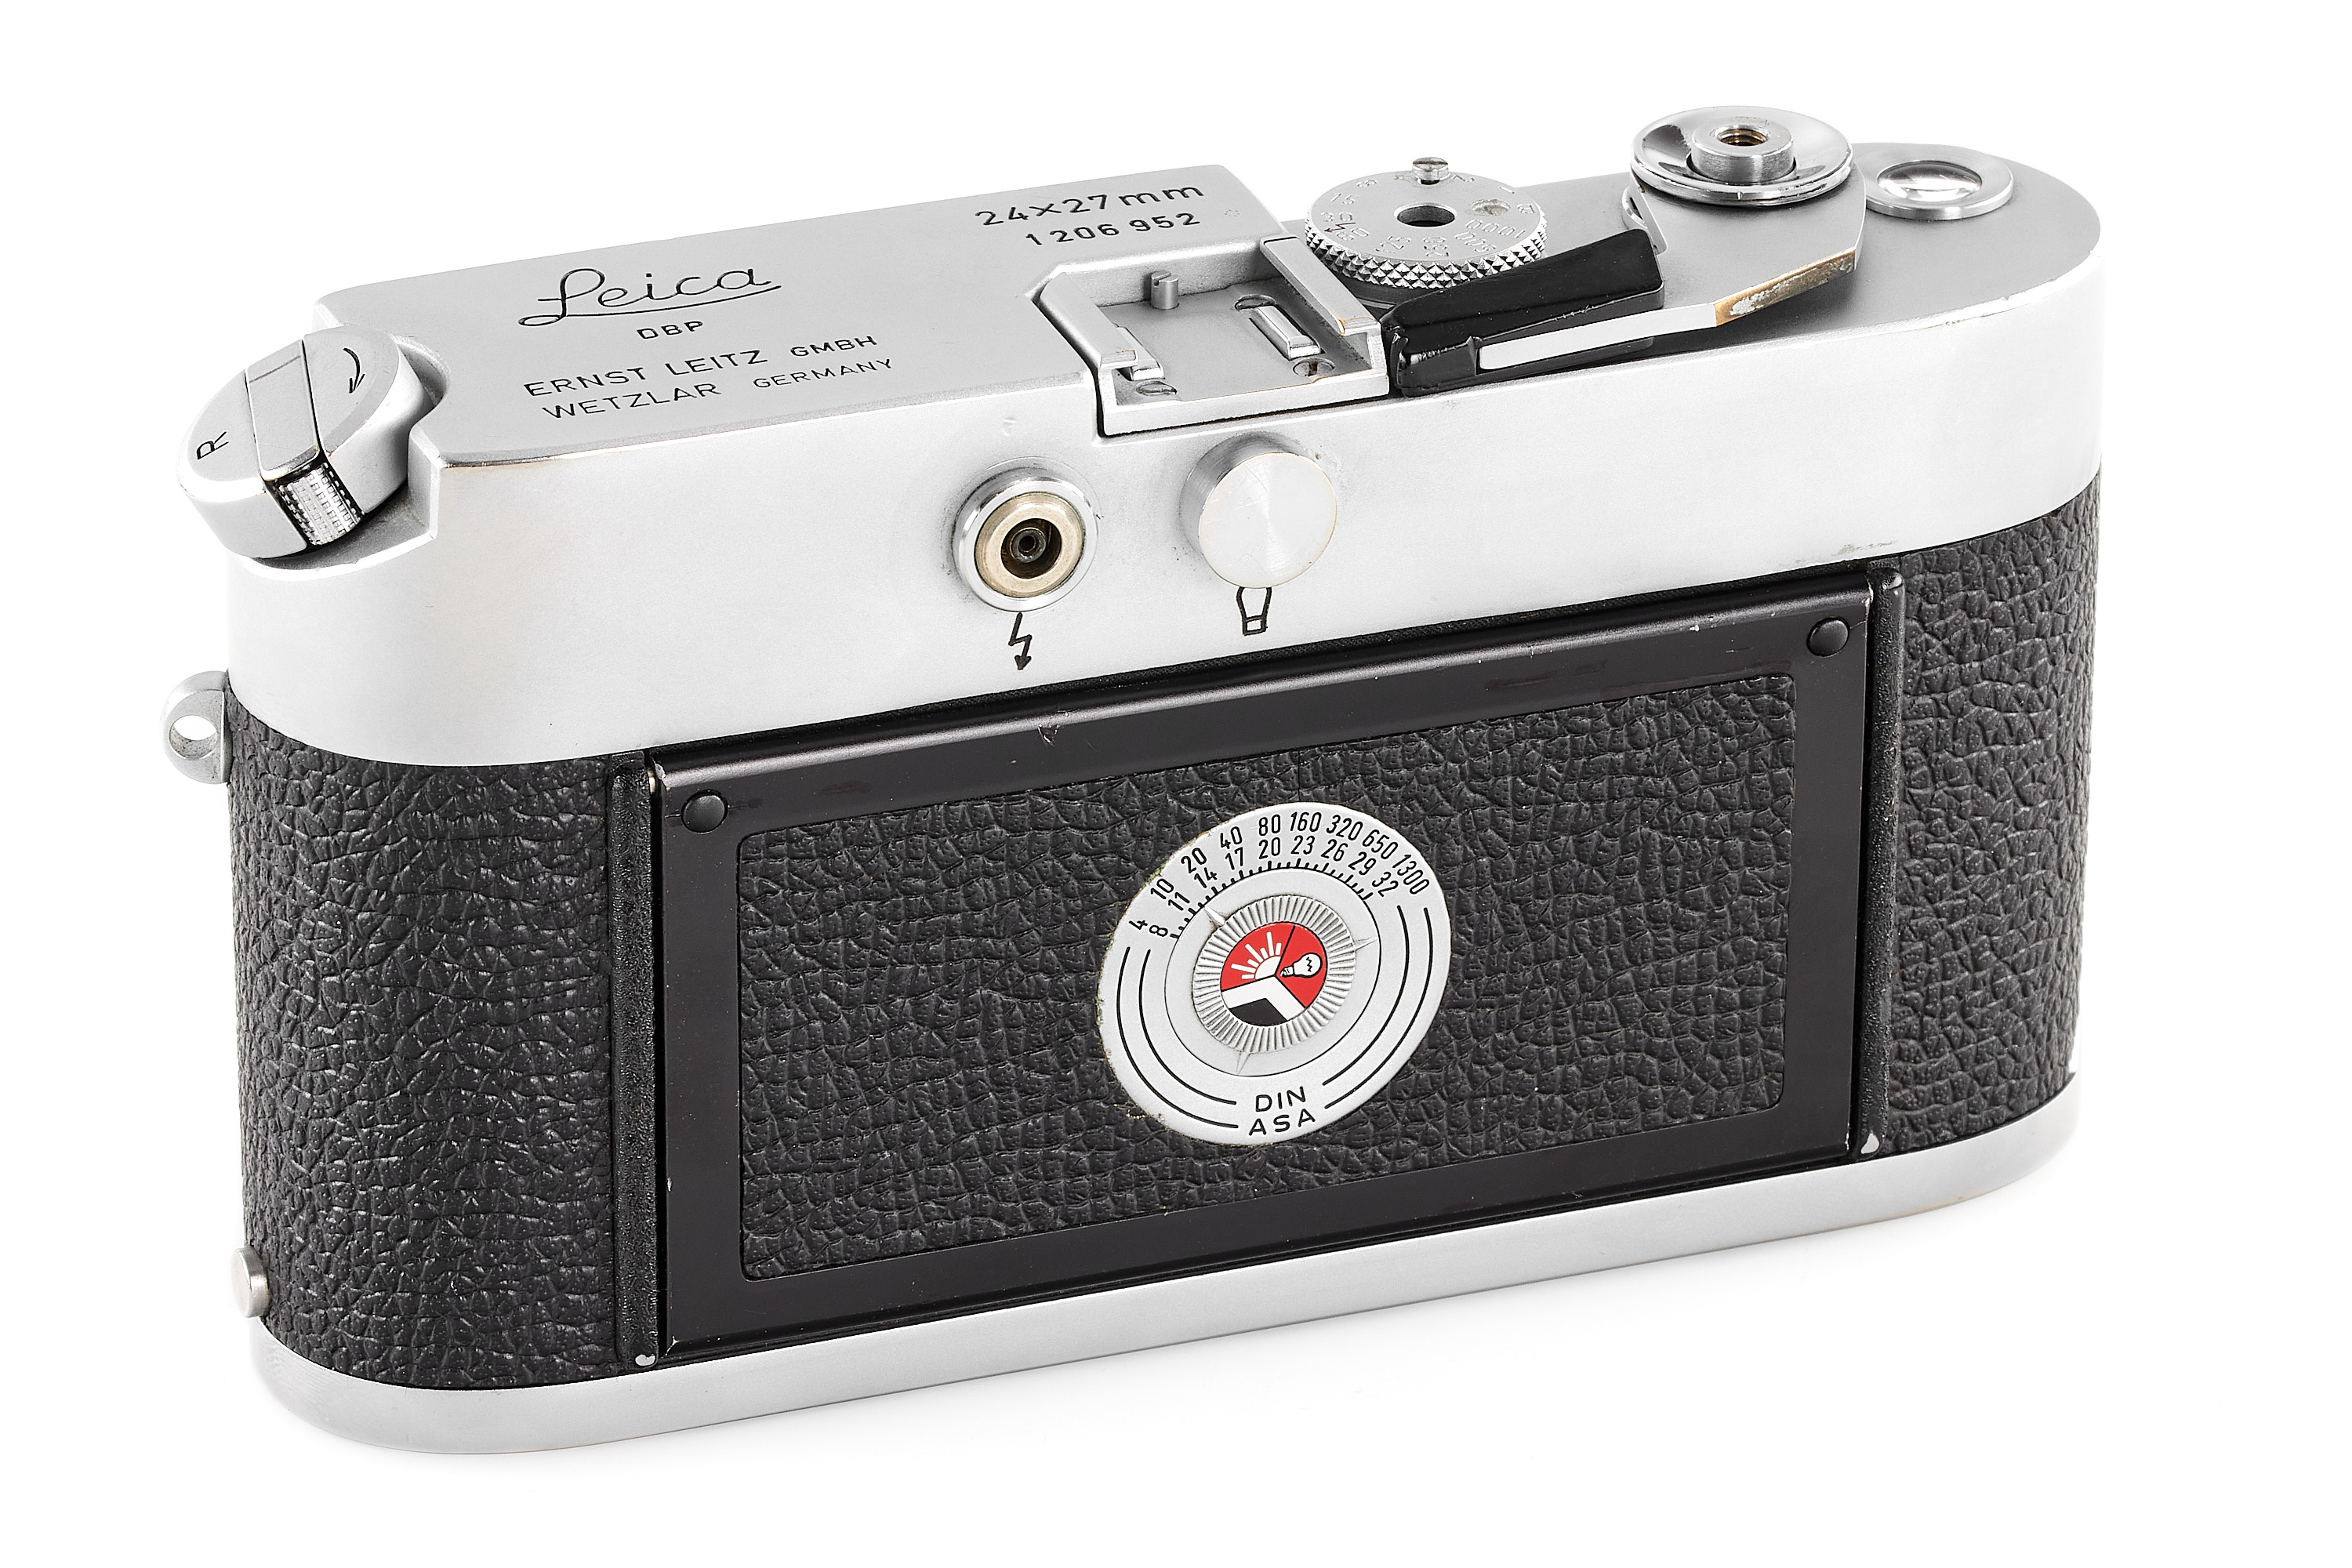 Leica MDa Post 24x27mm with Summaron 5.6/2.8cm | A00654